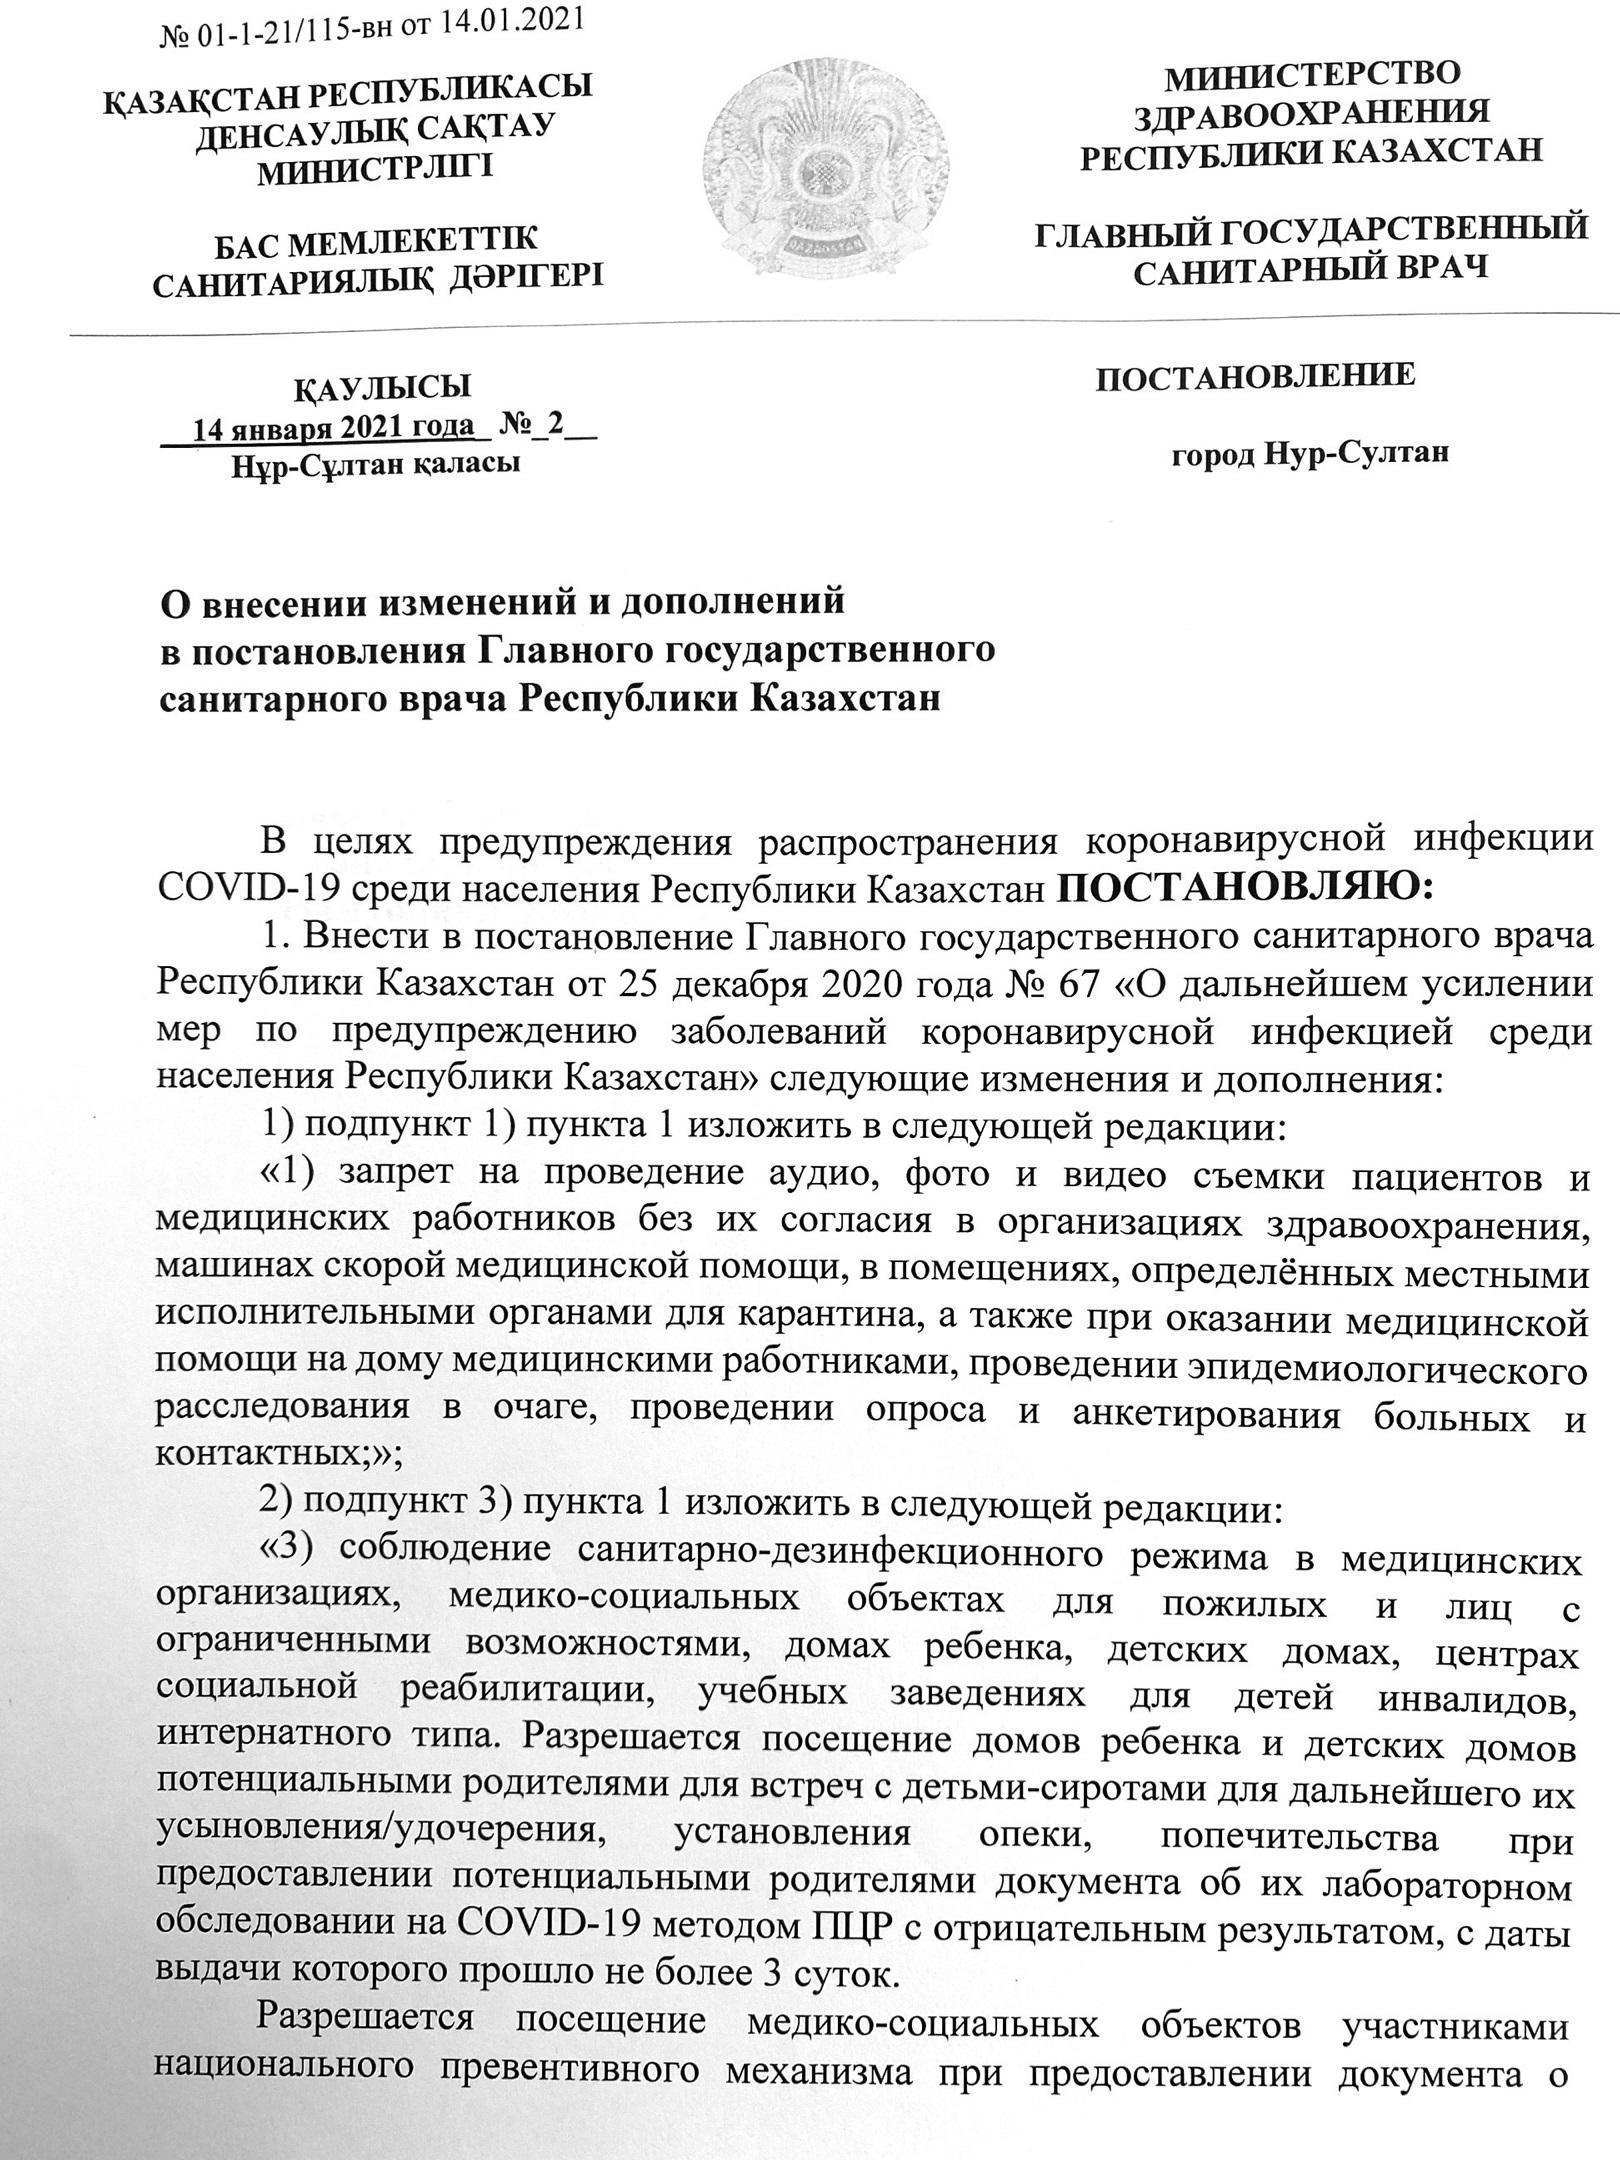 Постановление главного санитарного врача №2 от 14.01.2021